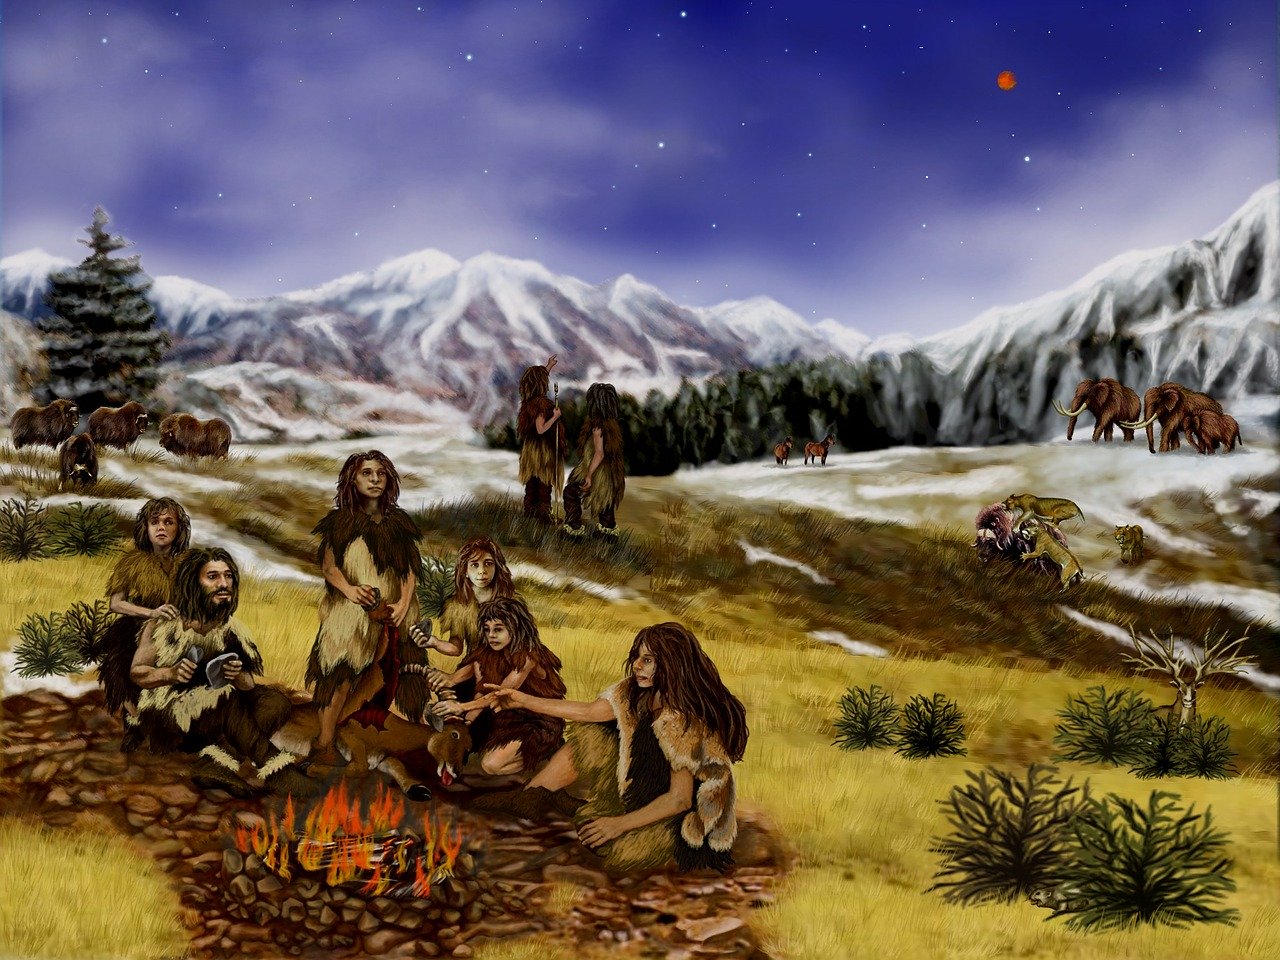   L’Homme de Néandertal aurait disparu même sans l’Homo Sapiens